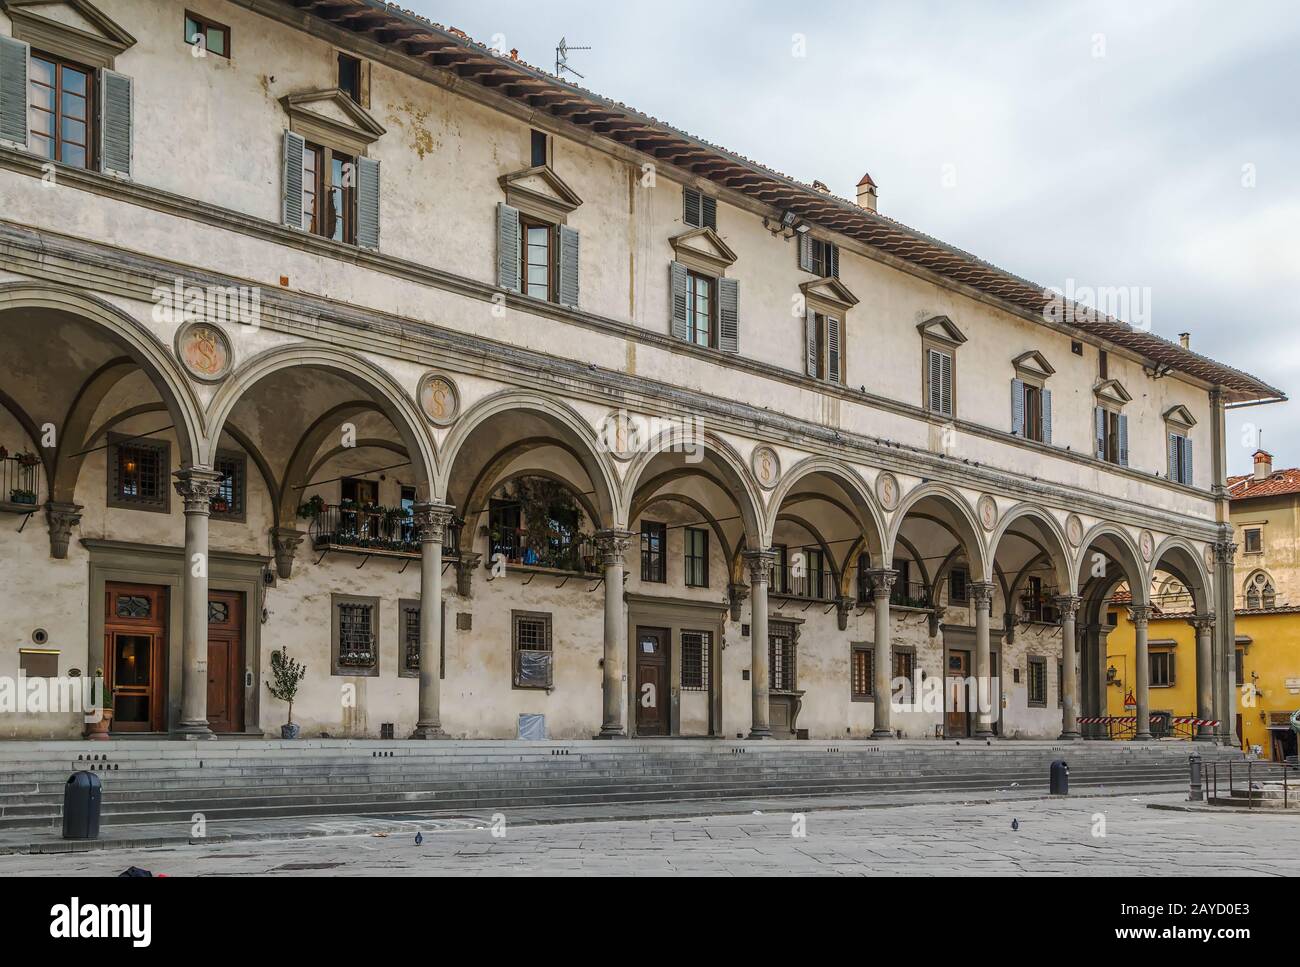 Piazza della Santissima Annunziata, Florence, Italy Stock Photo